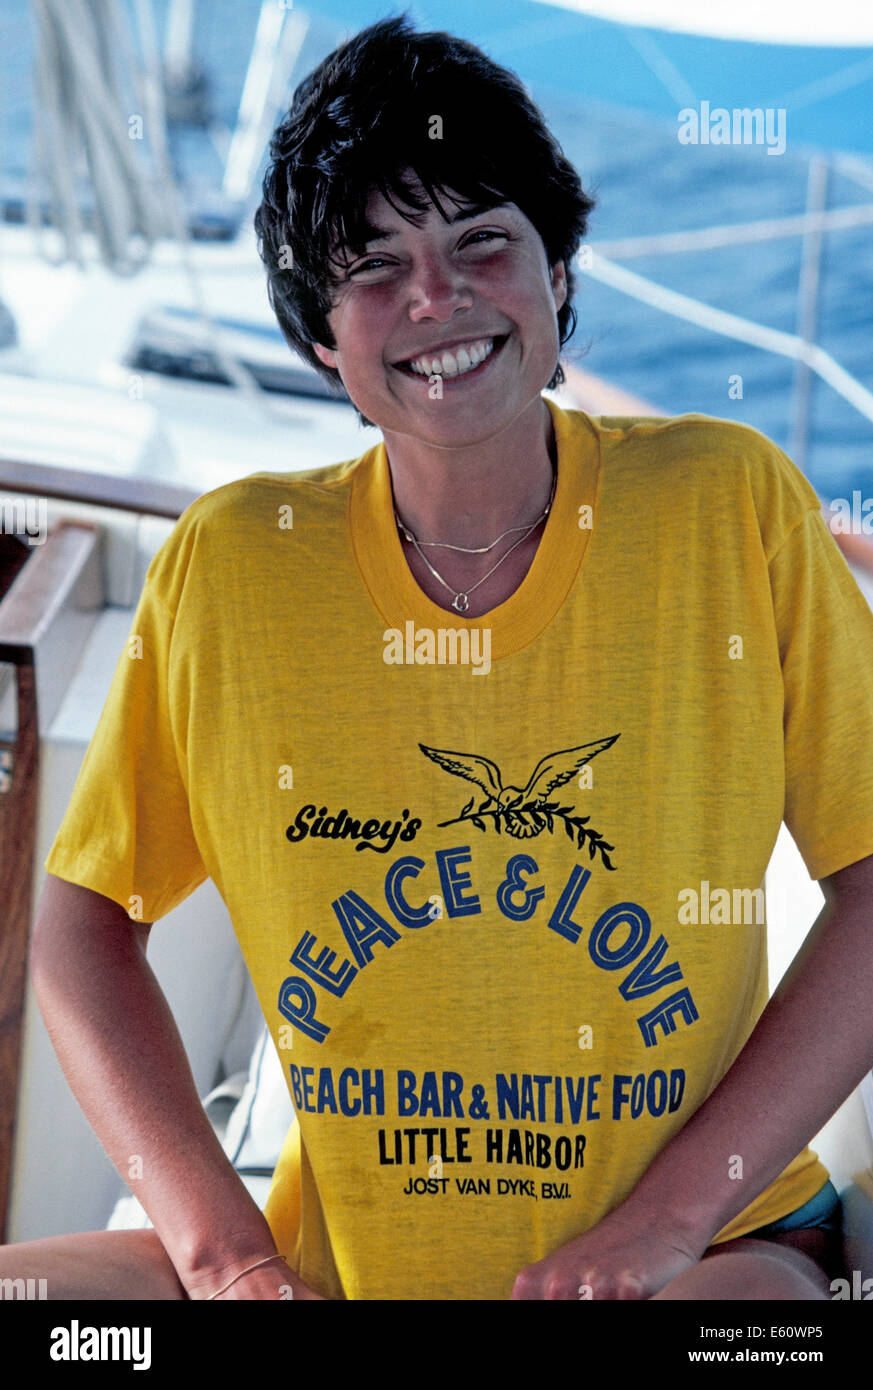 Ein Lächeln auf den Lippen Seemann zeigt stolz ihr Souvenir T-shirt von Sidneys Peace & Love Beach Bar auf Jost Van Dyke in den British Virgin Islands (BVIs). Stockfoto